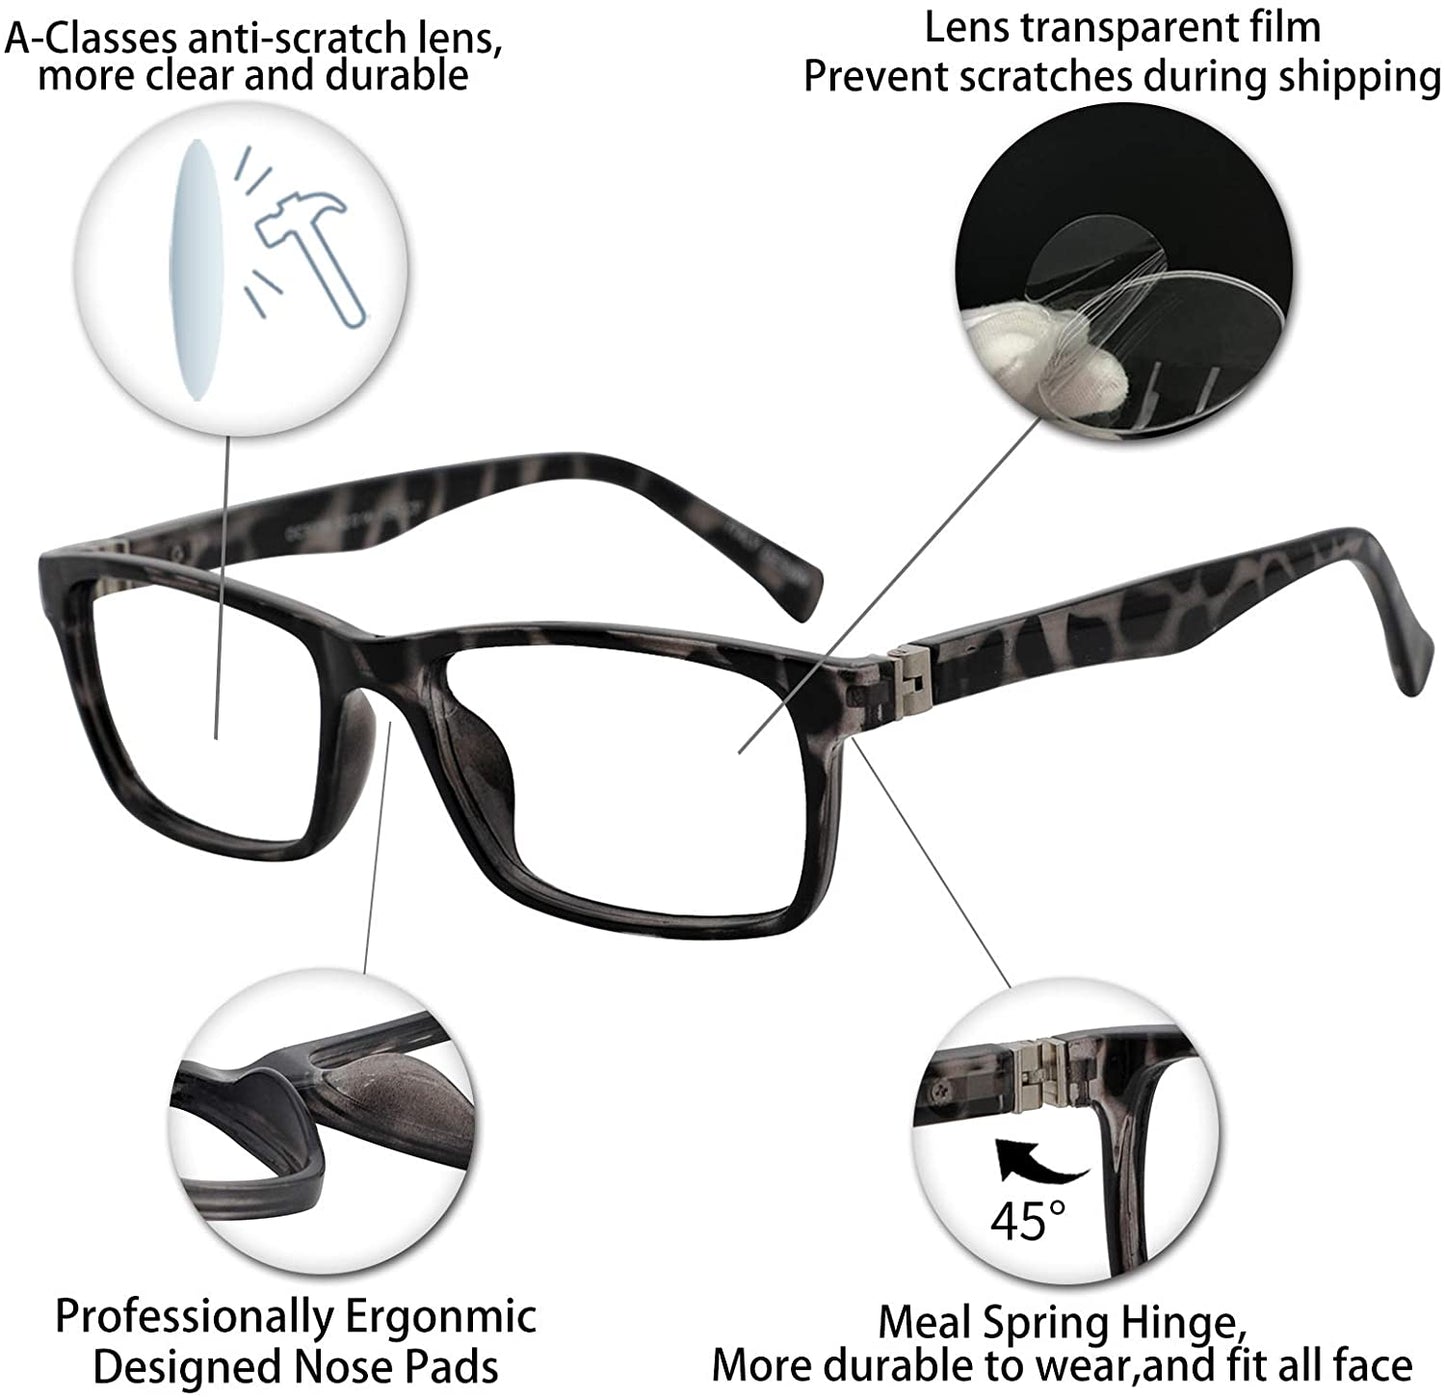 OCCI CHIARI Reading Glasses For Men Eye Reader Spring Hinge